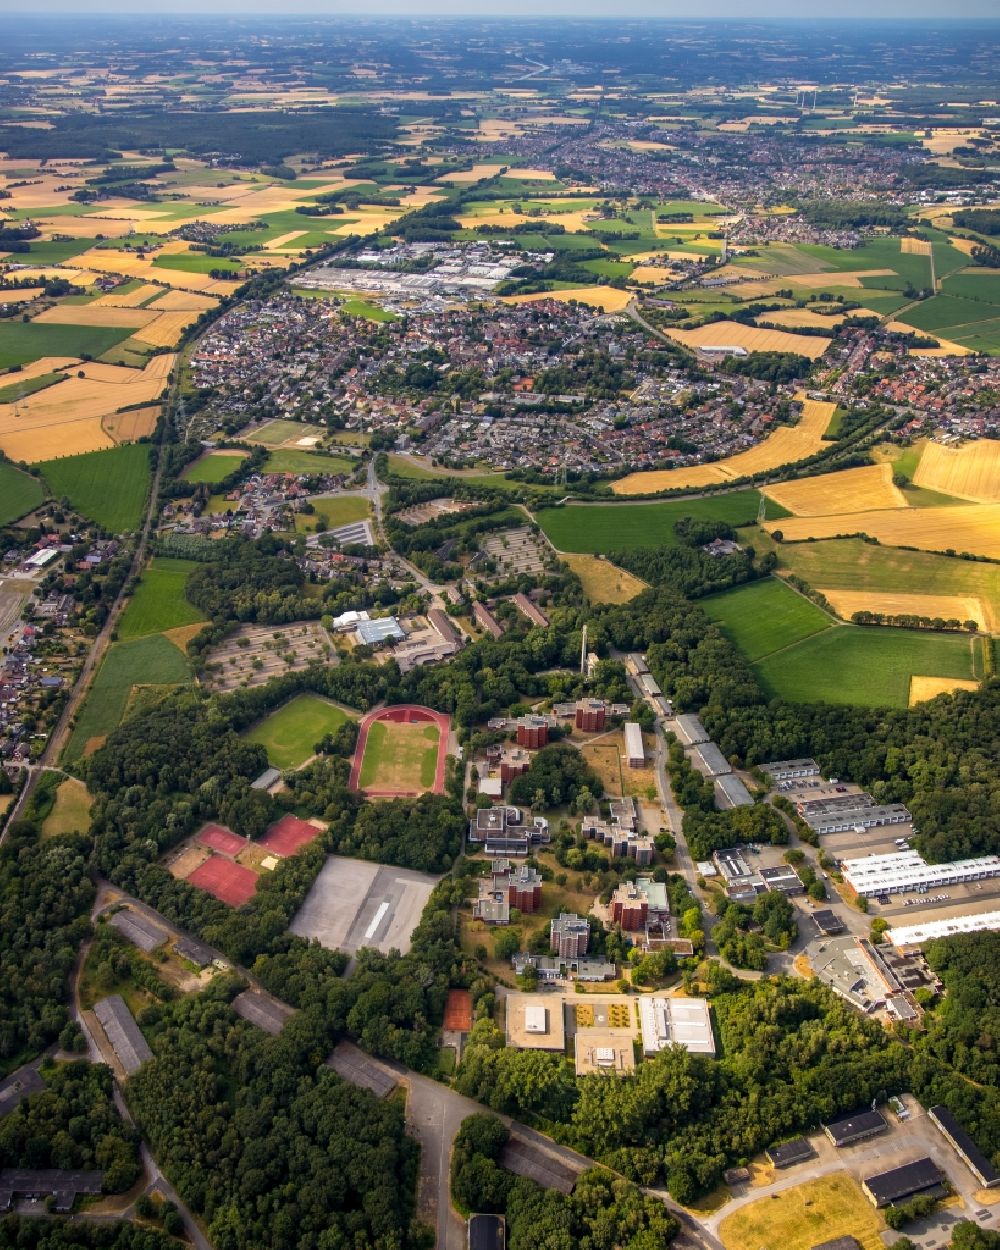 Luftbild Bork - Gesamtübersicht und Stadtgebiet mit Außenbezirken und Innenstadtbereich in Bork im Bundesland Nordrhein-Westfalen, Deutschland